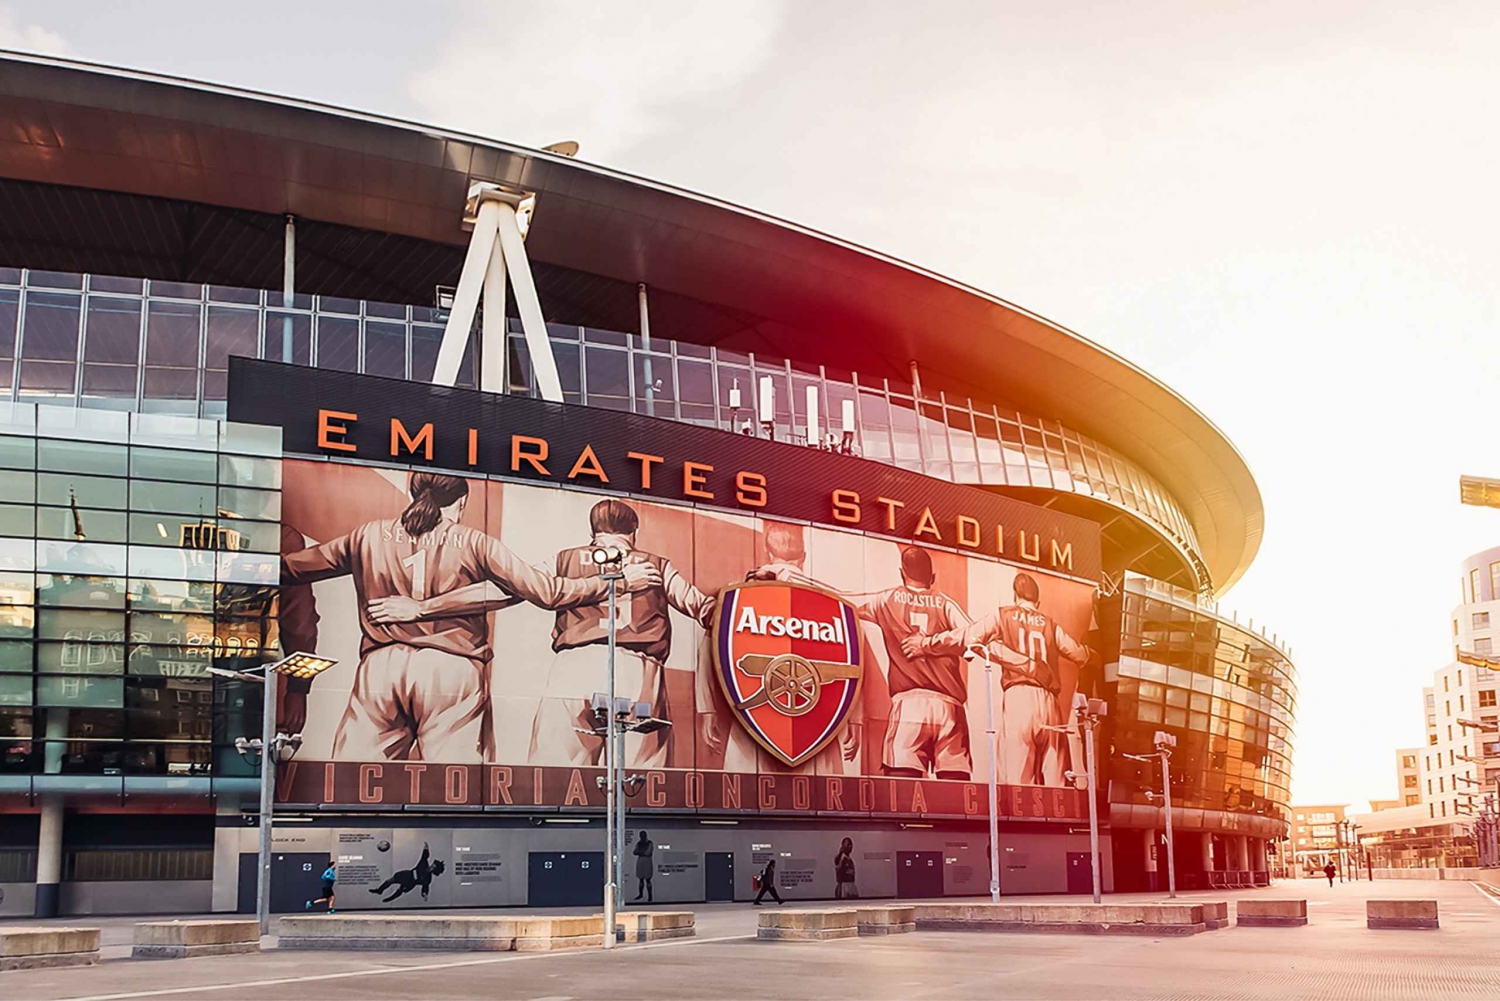 Londres : Emirates Stadium et audioguide